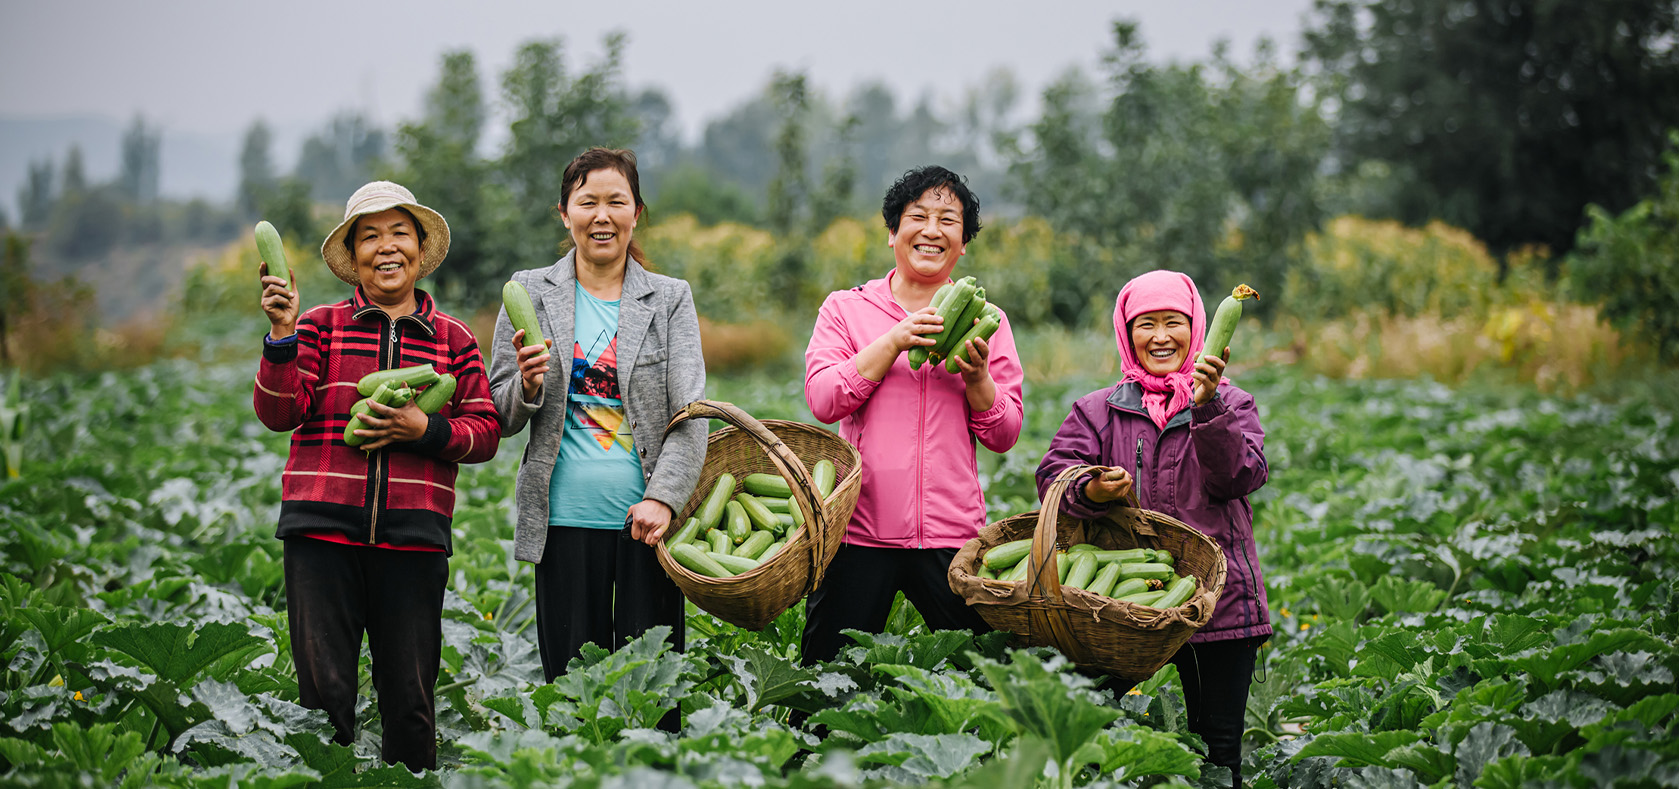 Women Empowerment in Guanglin Agriculture Cooperative.
Photo: UN Women/Qiu Bi